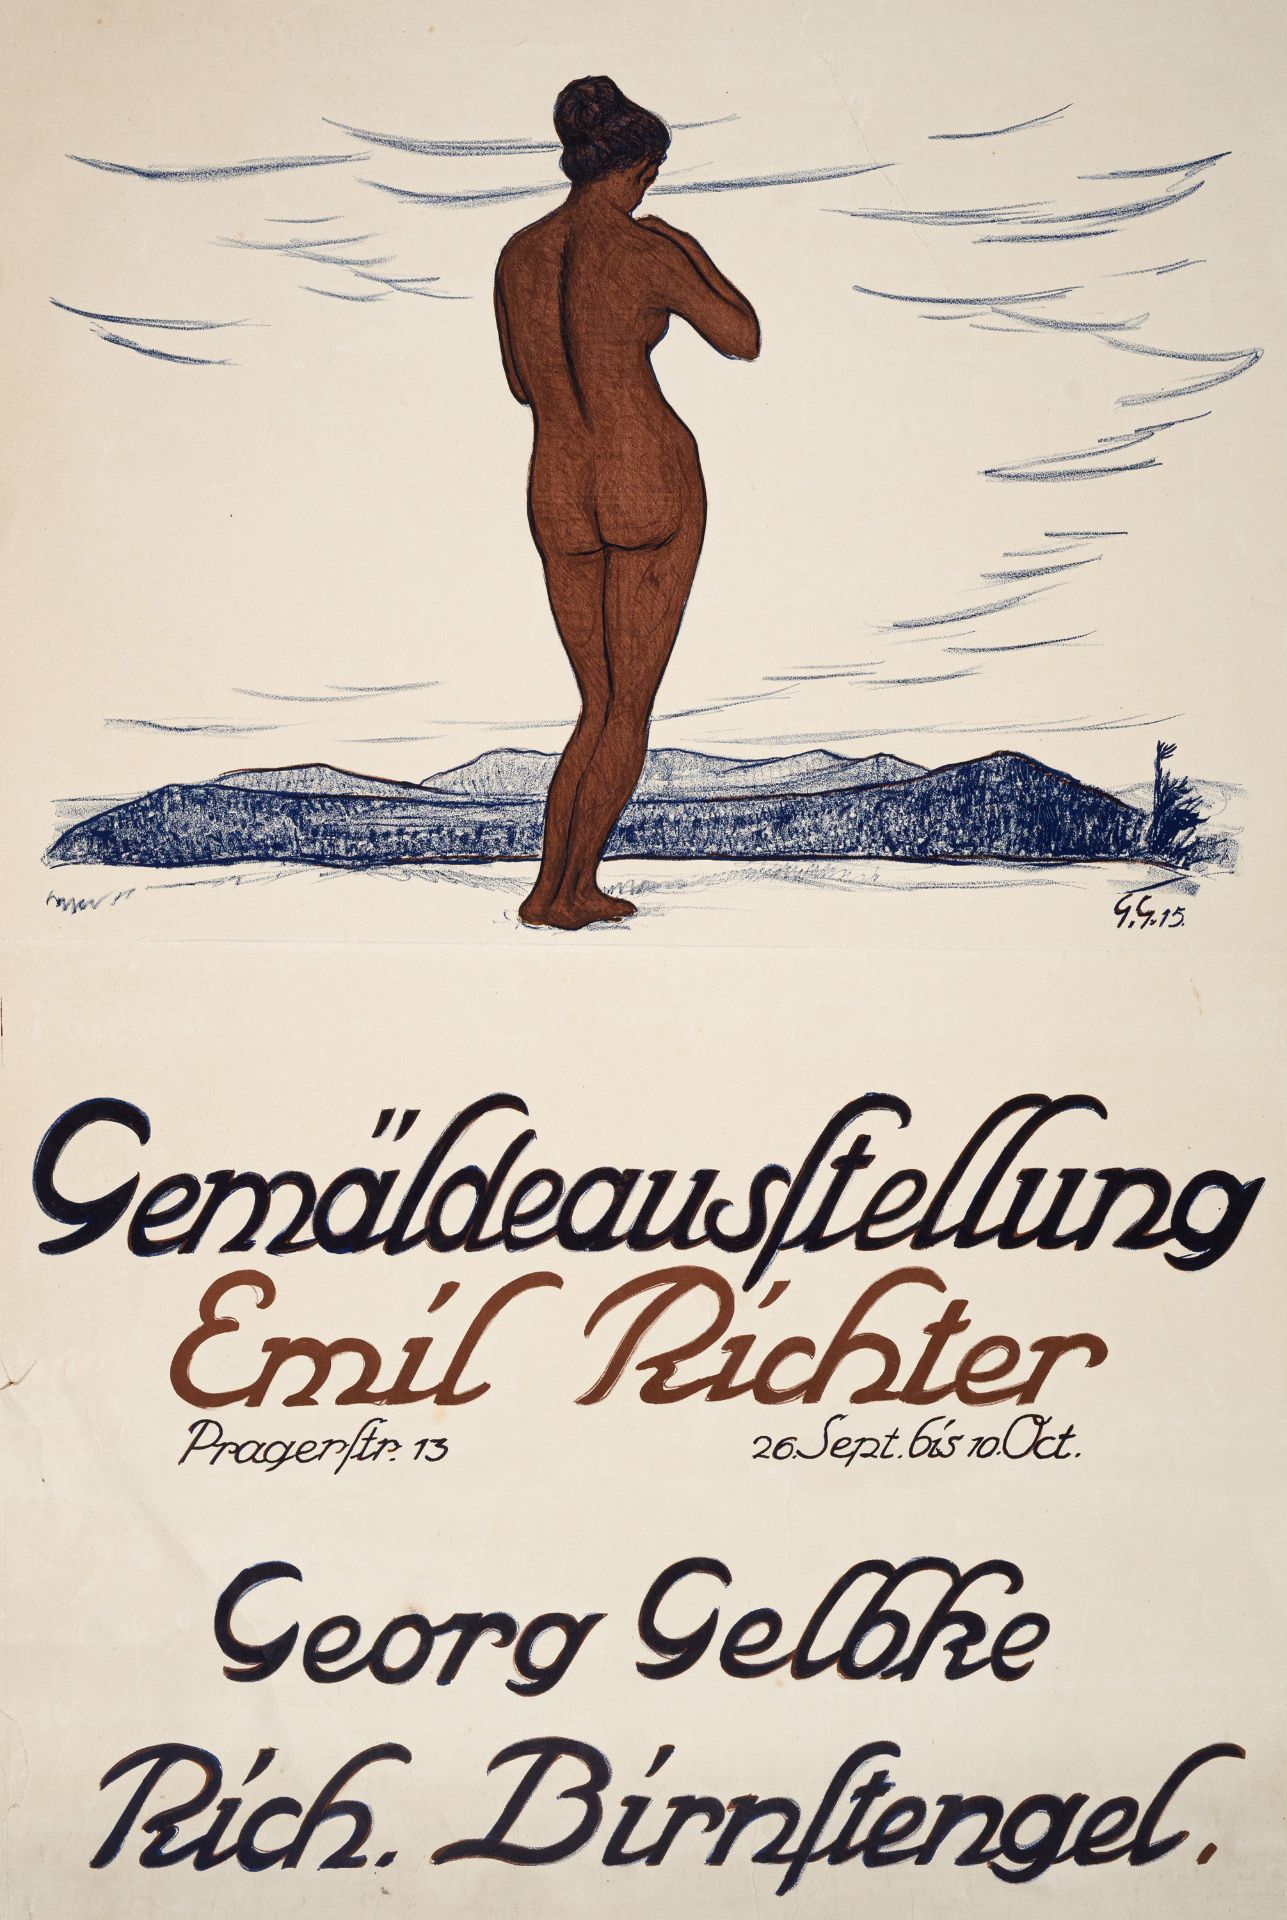 Georg Gelbke "Gemäldeausstellung Emil Richter – Georg Gelbke, Rich. Birnstengel". 1915.